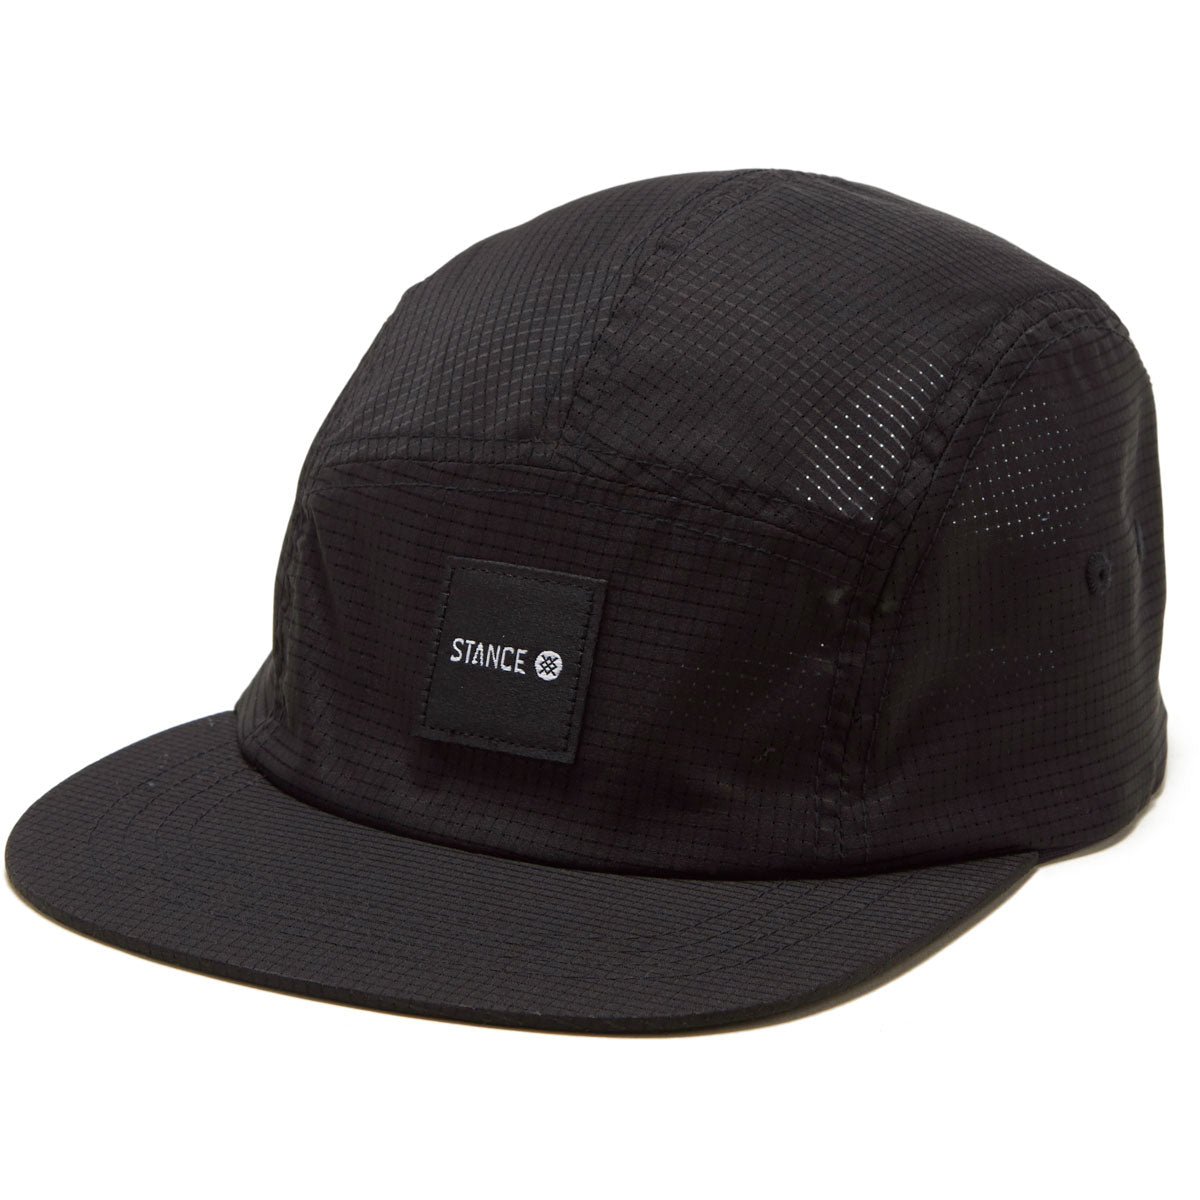 Stance Kinetic Adjustable Hat - Black image 1